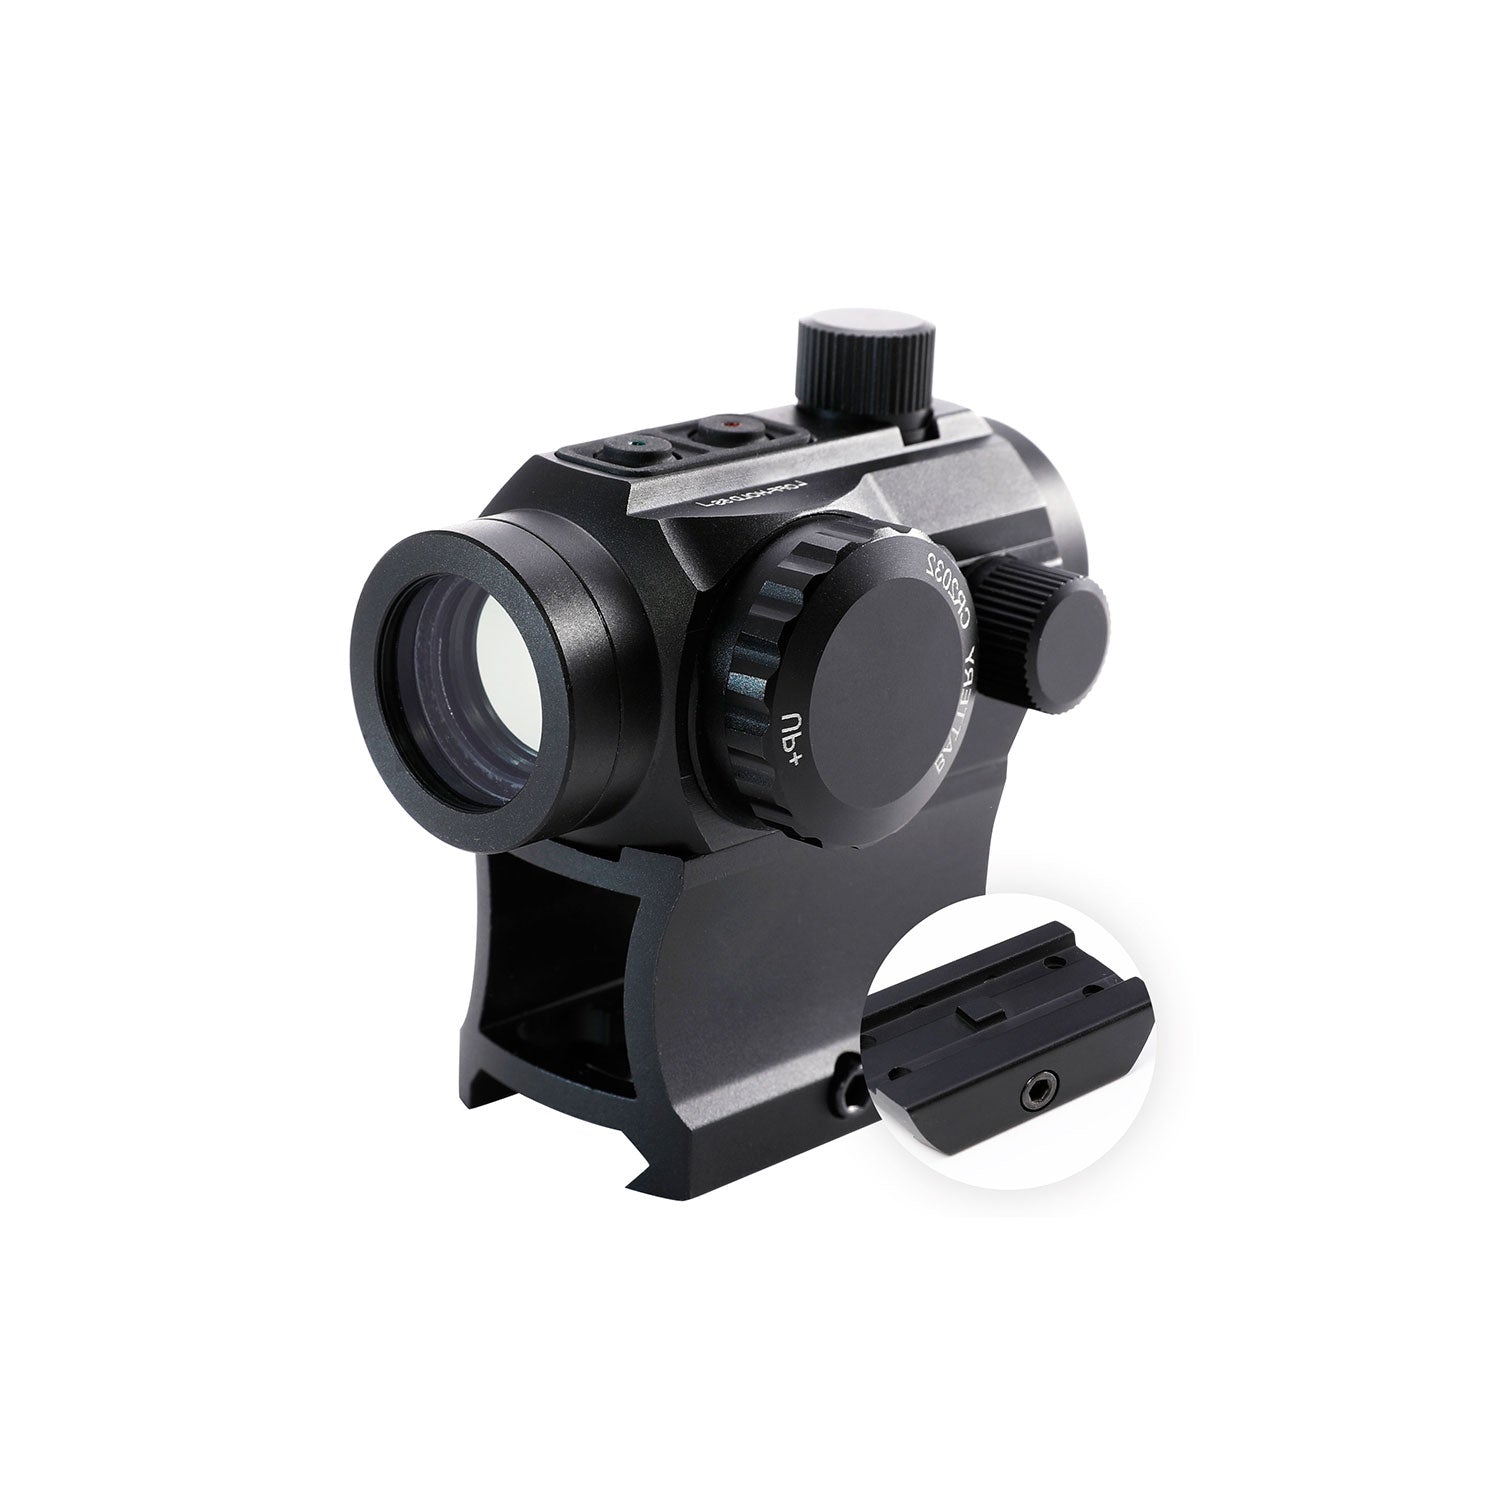 1*20mm Red Dot Sight, 4 MOA, Riser Included, K9 Lens